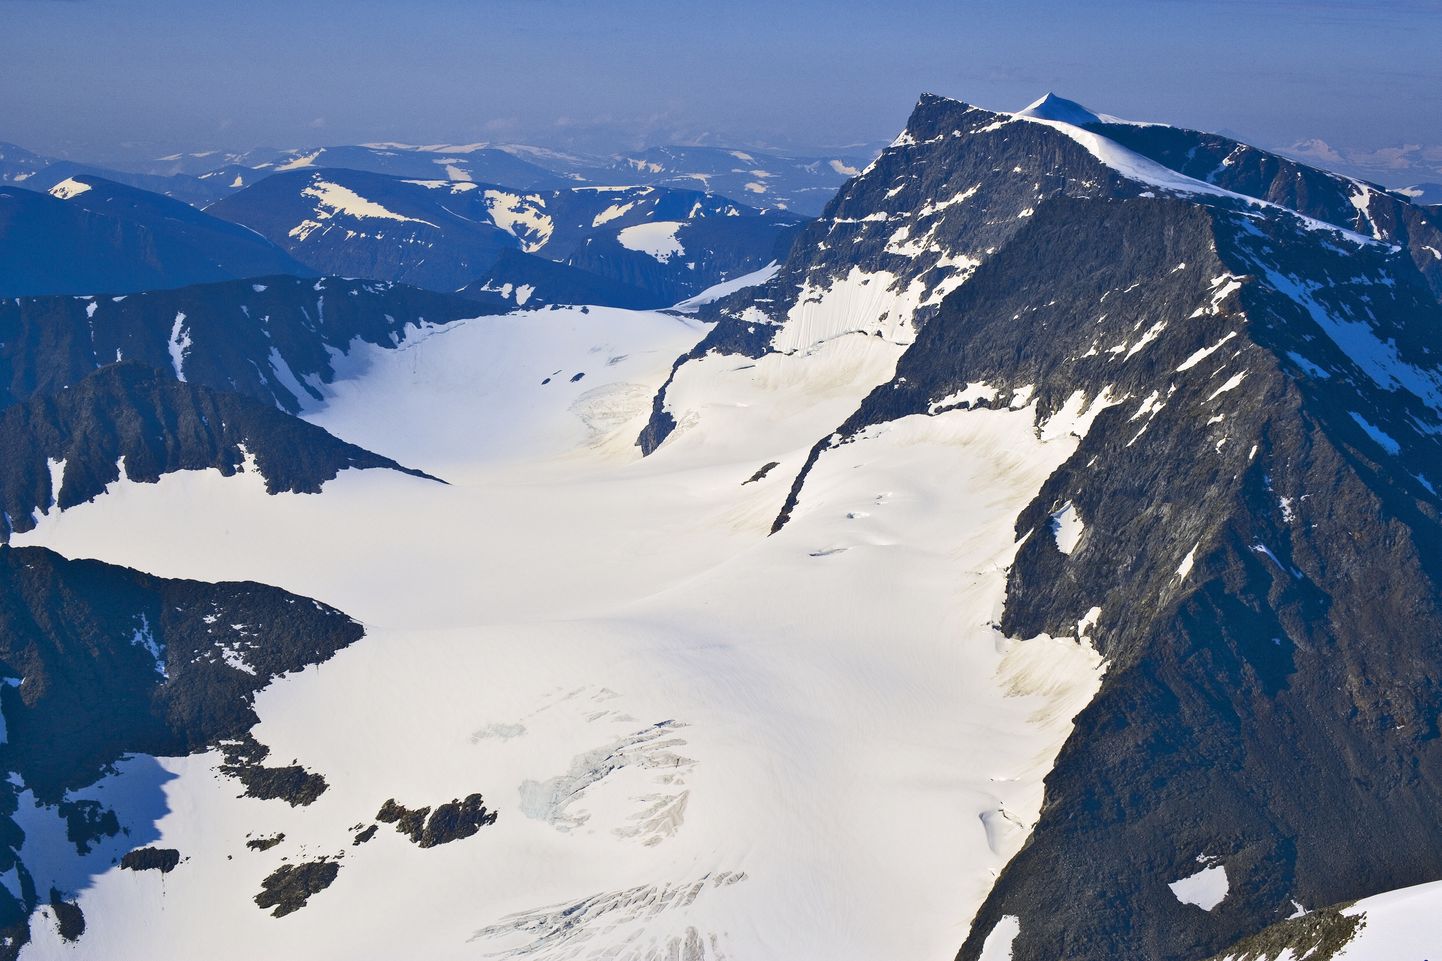 Rootsi kõrgeim tipp on Kebnekaise oma 2103 meetriga